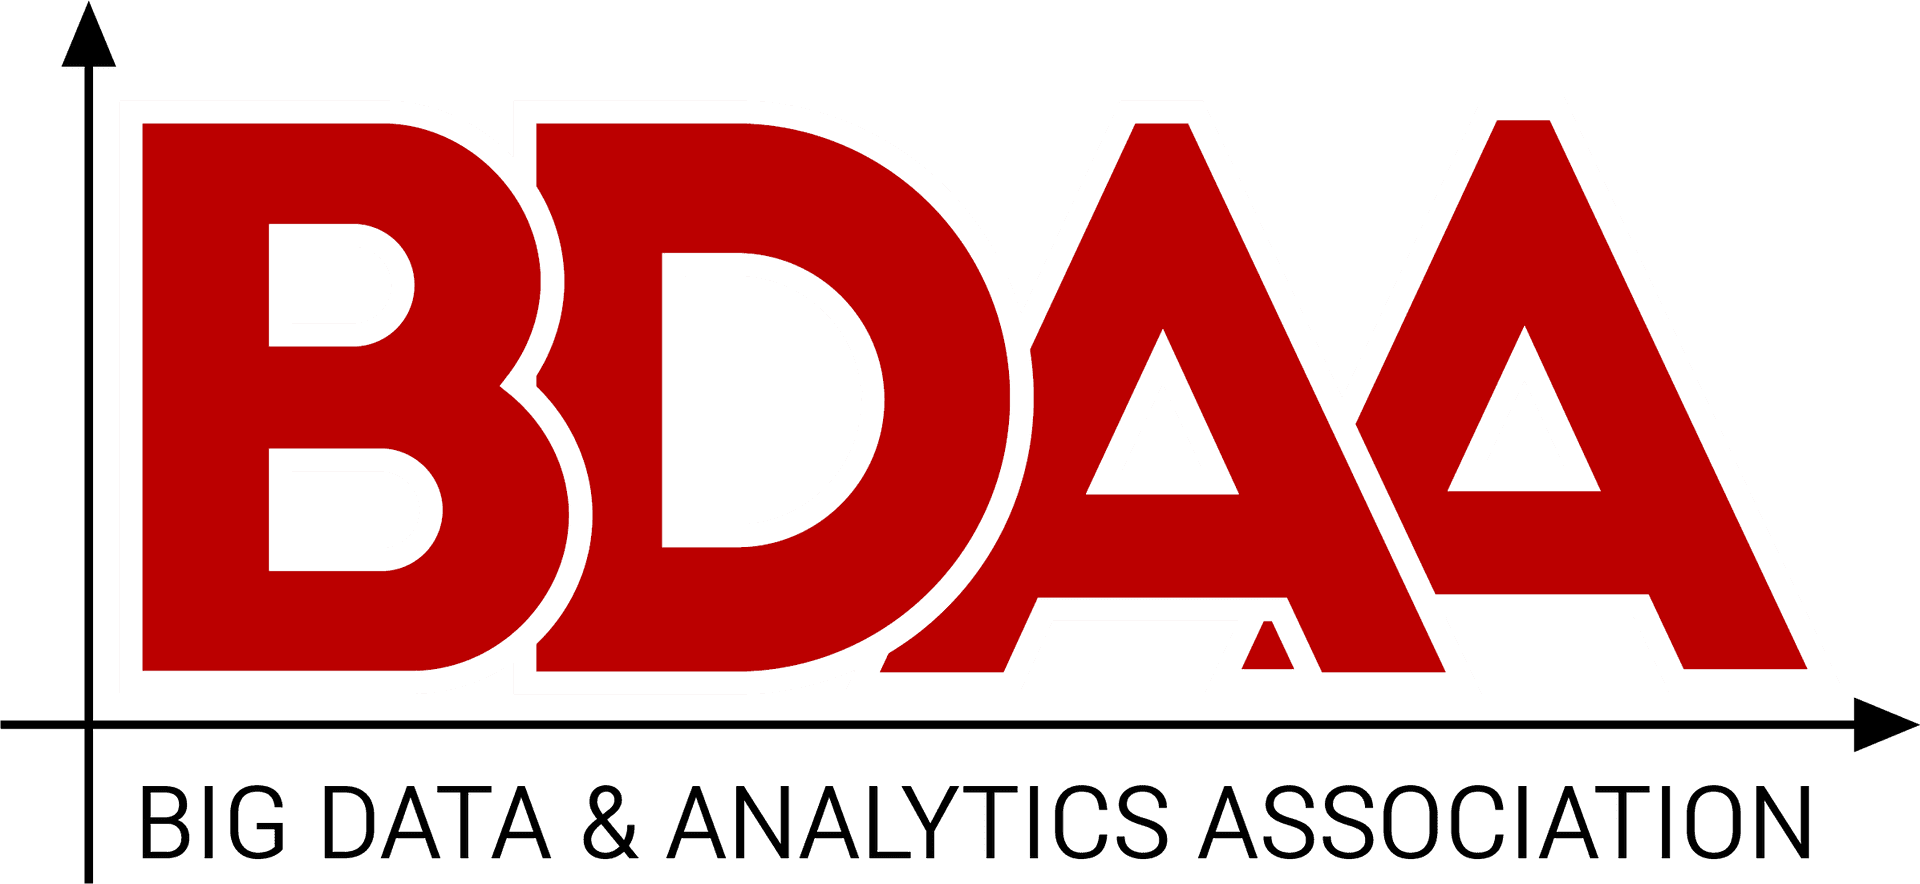 B D A A Big Data Analytics Association Logo PNG